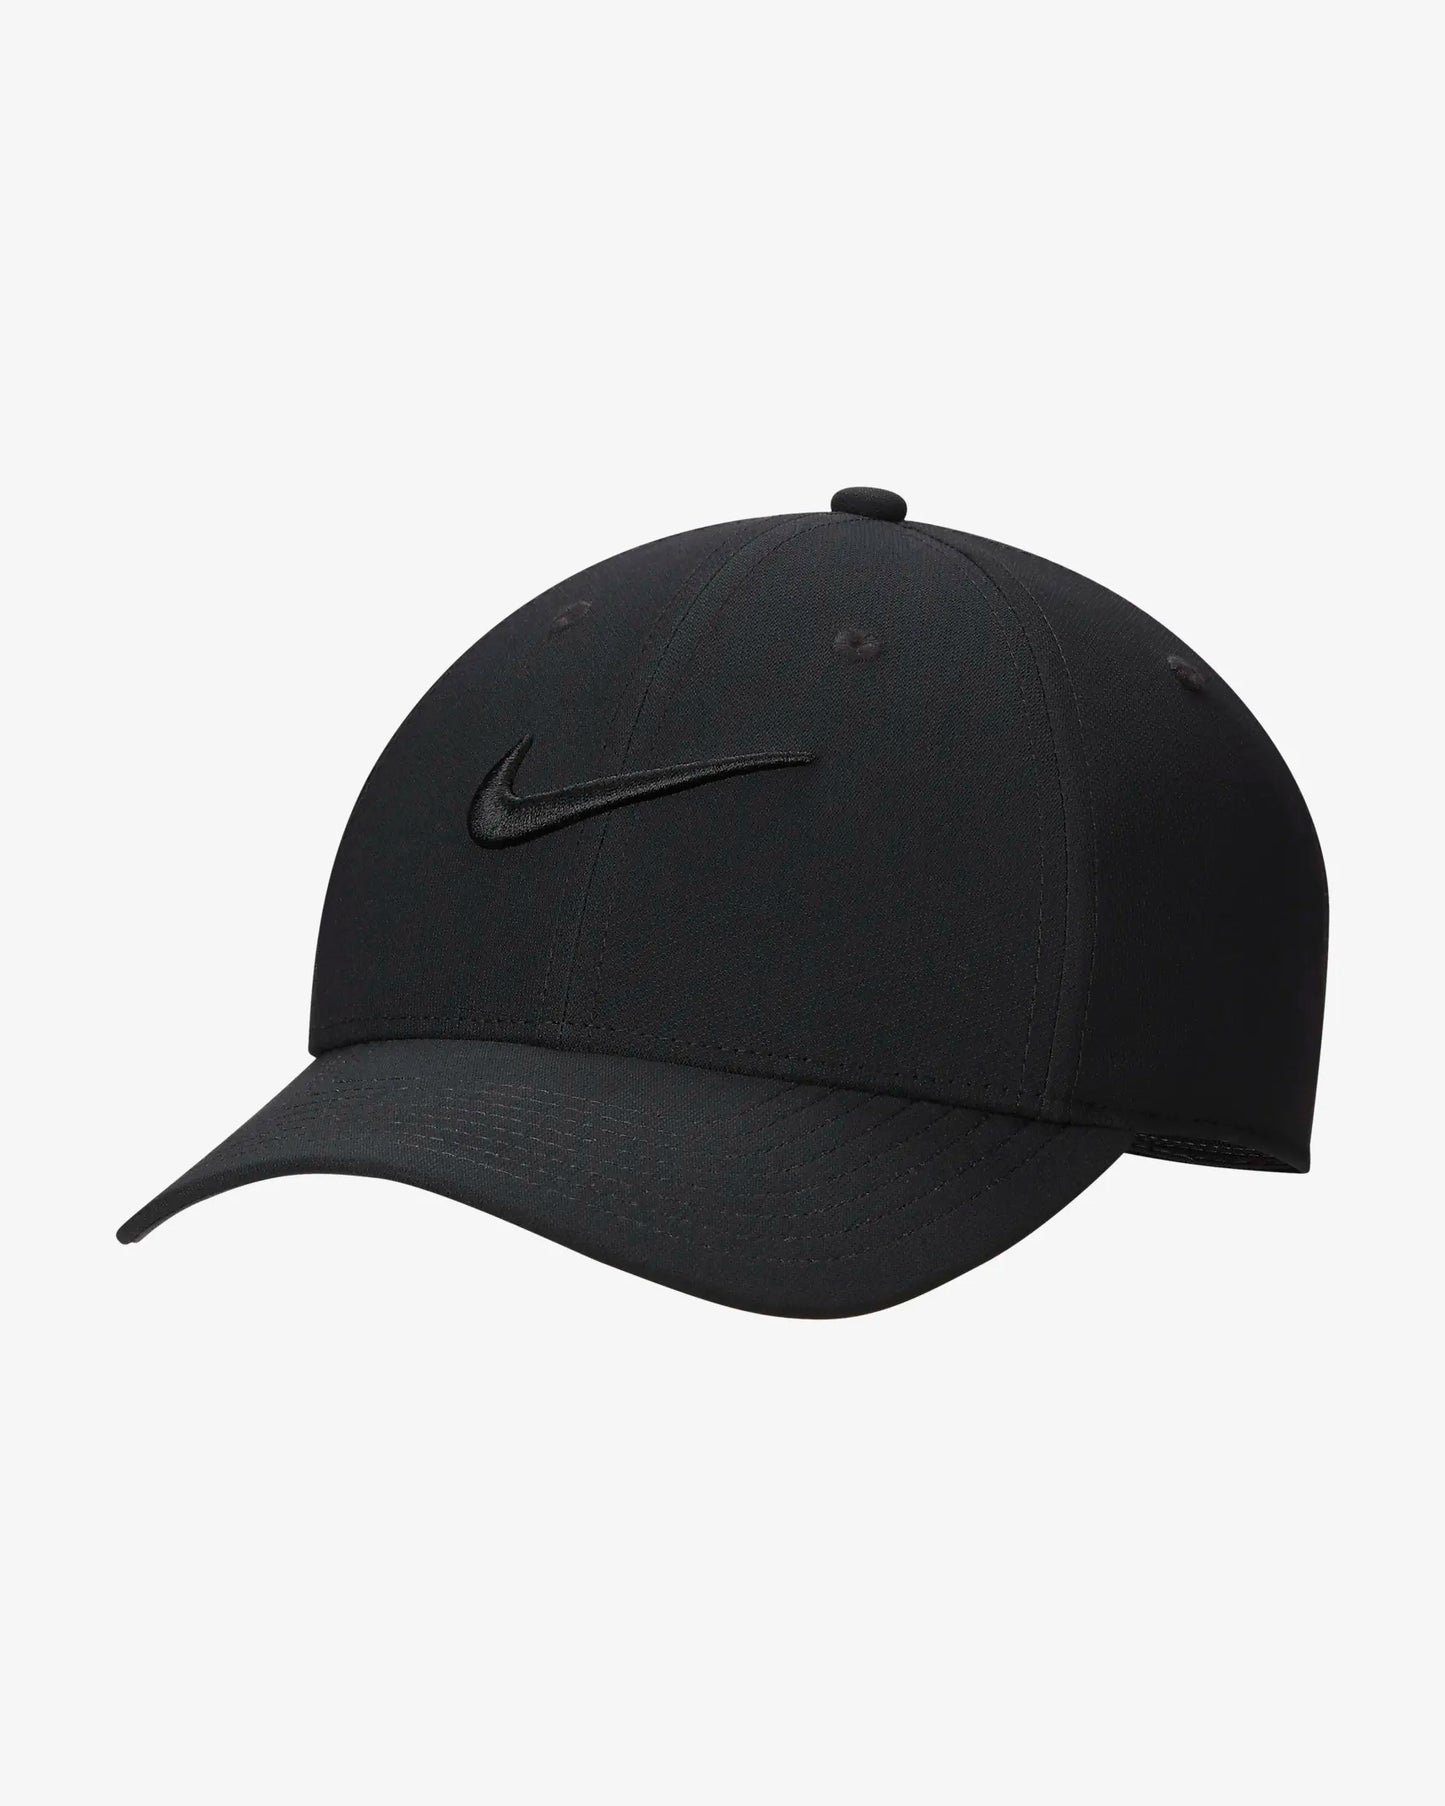 Nike: Dri-Fit Club Hat